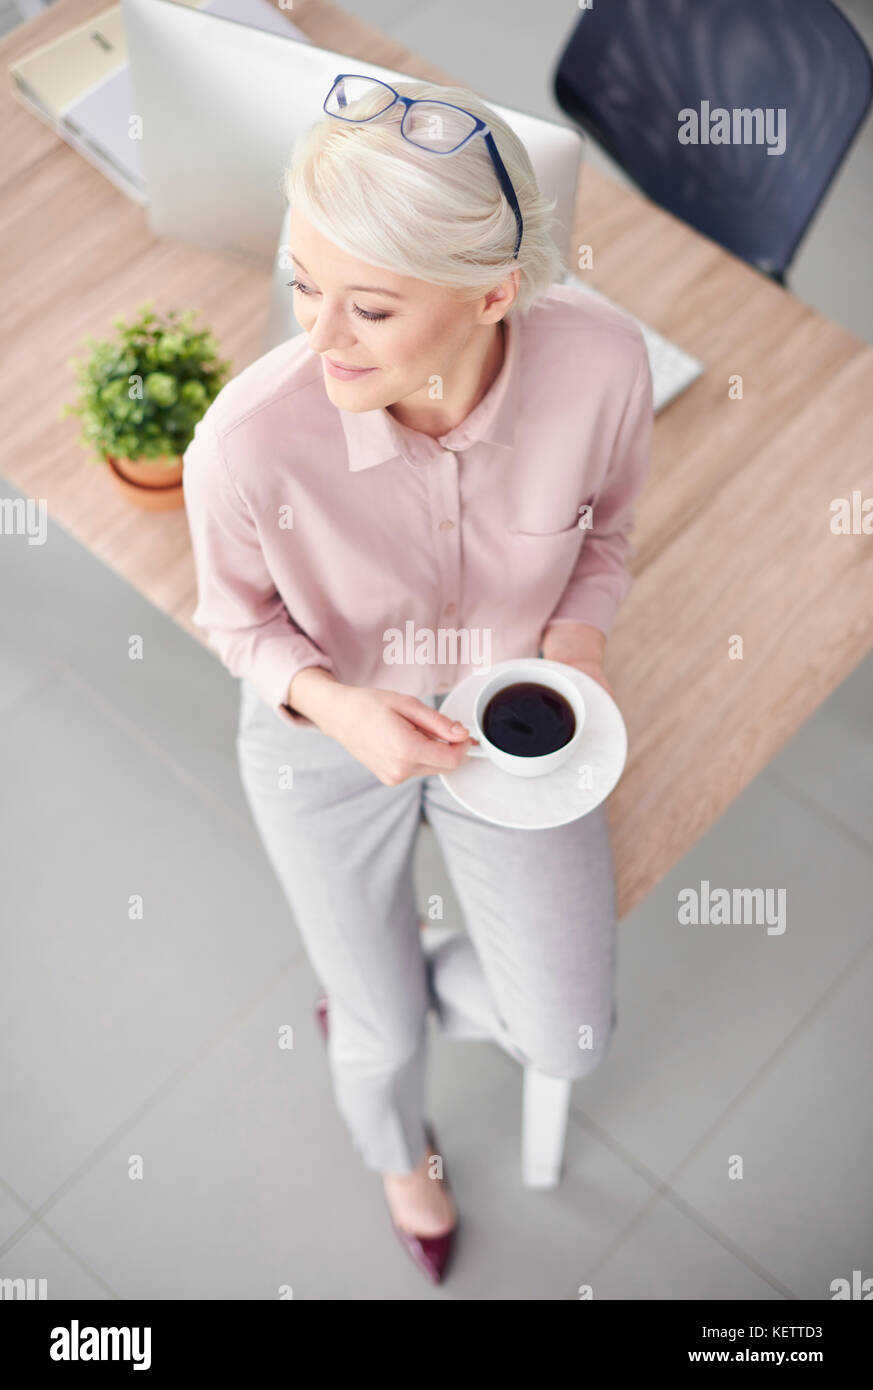 Smart Business personne avec café sitting at desk Banque D'Images